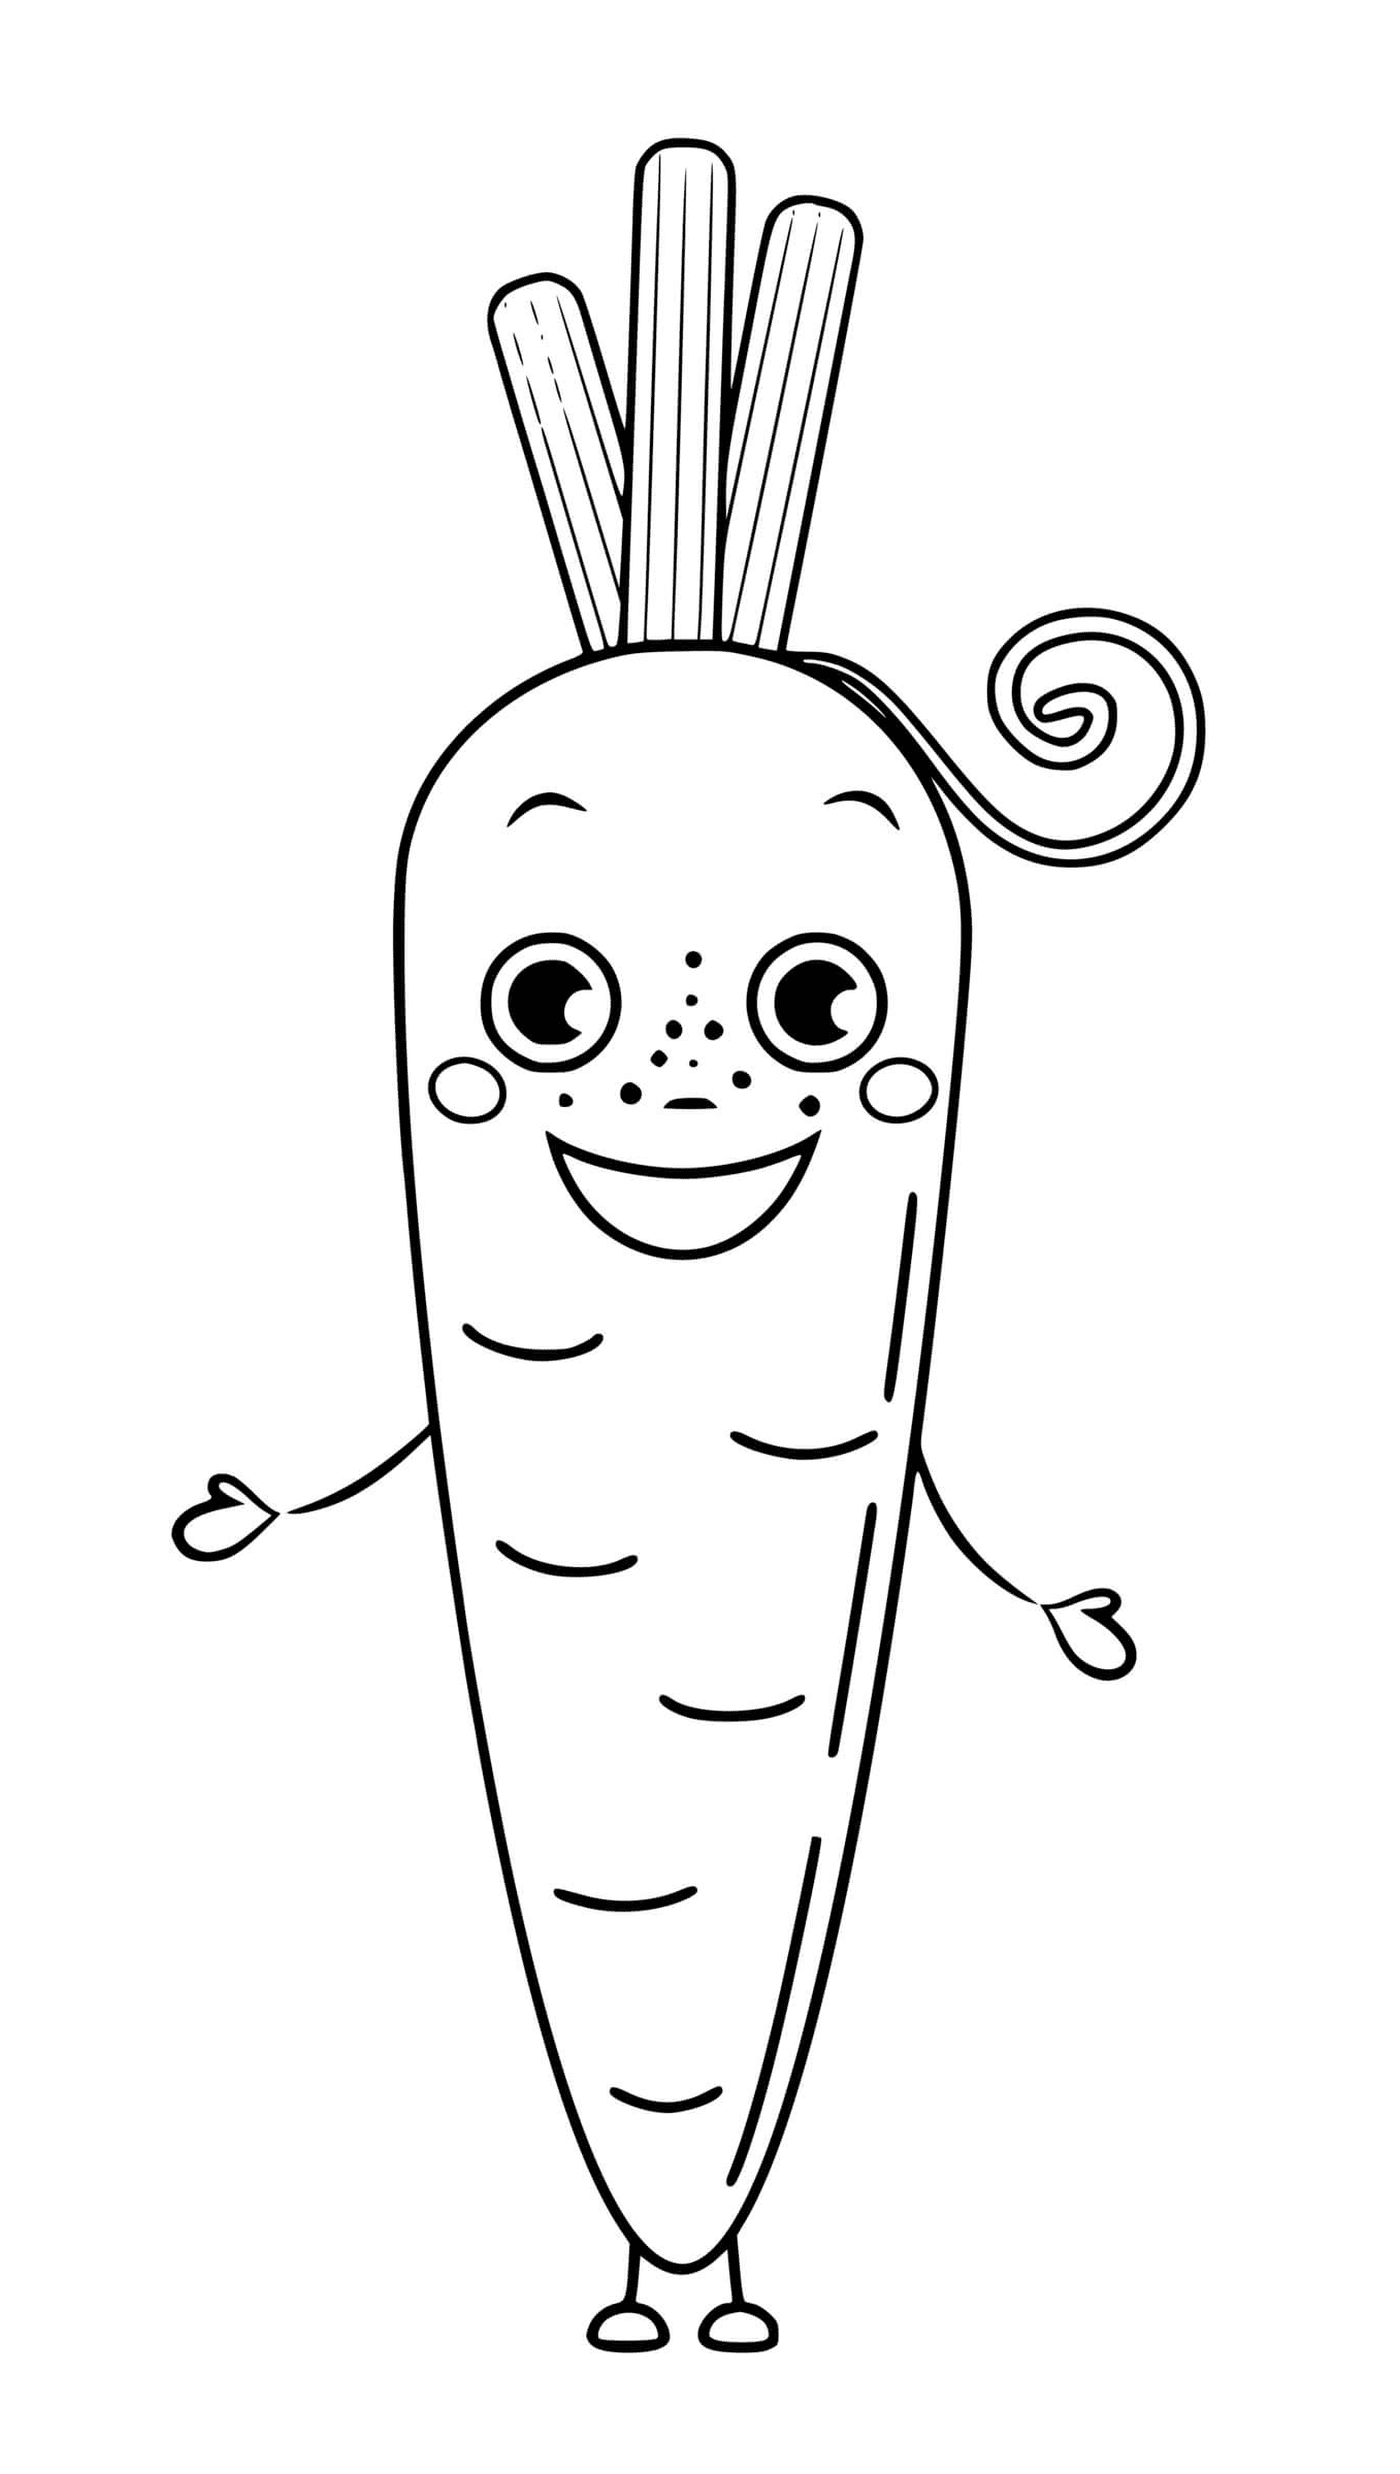  Zanahoria vegetal con ojos y sonrisa, una zanahoria con cola rizada 